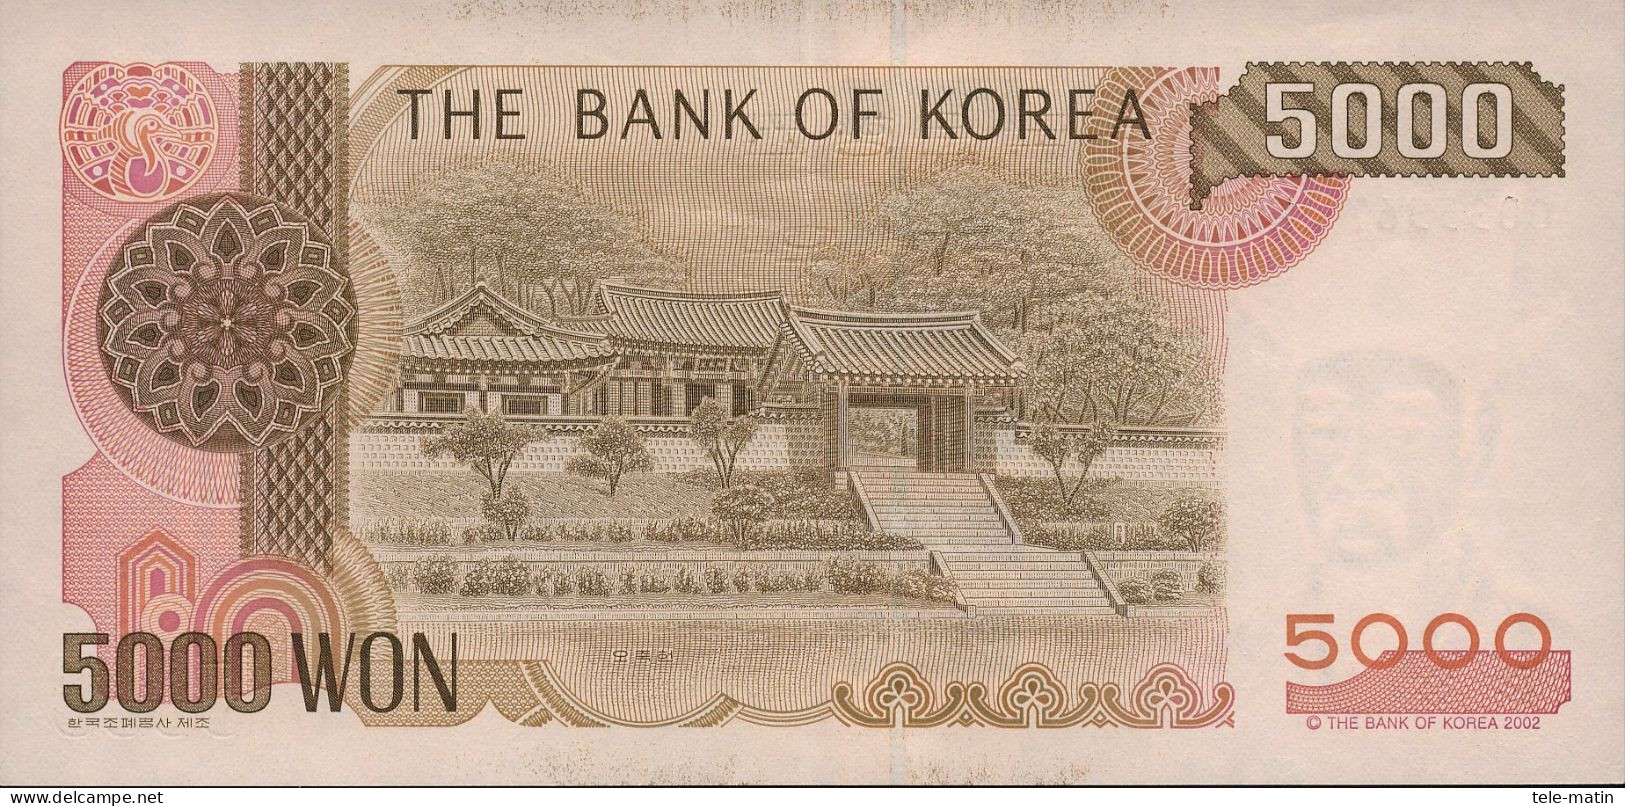 5 billets de la Corée du Sud